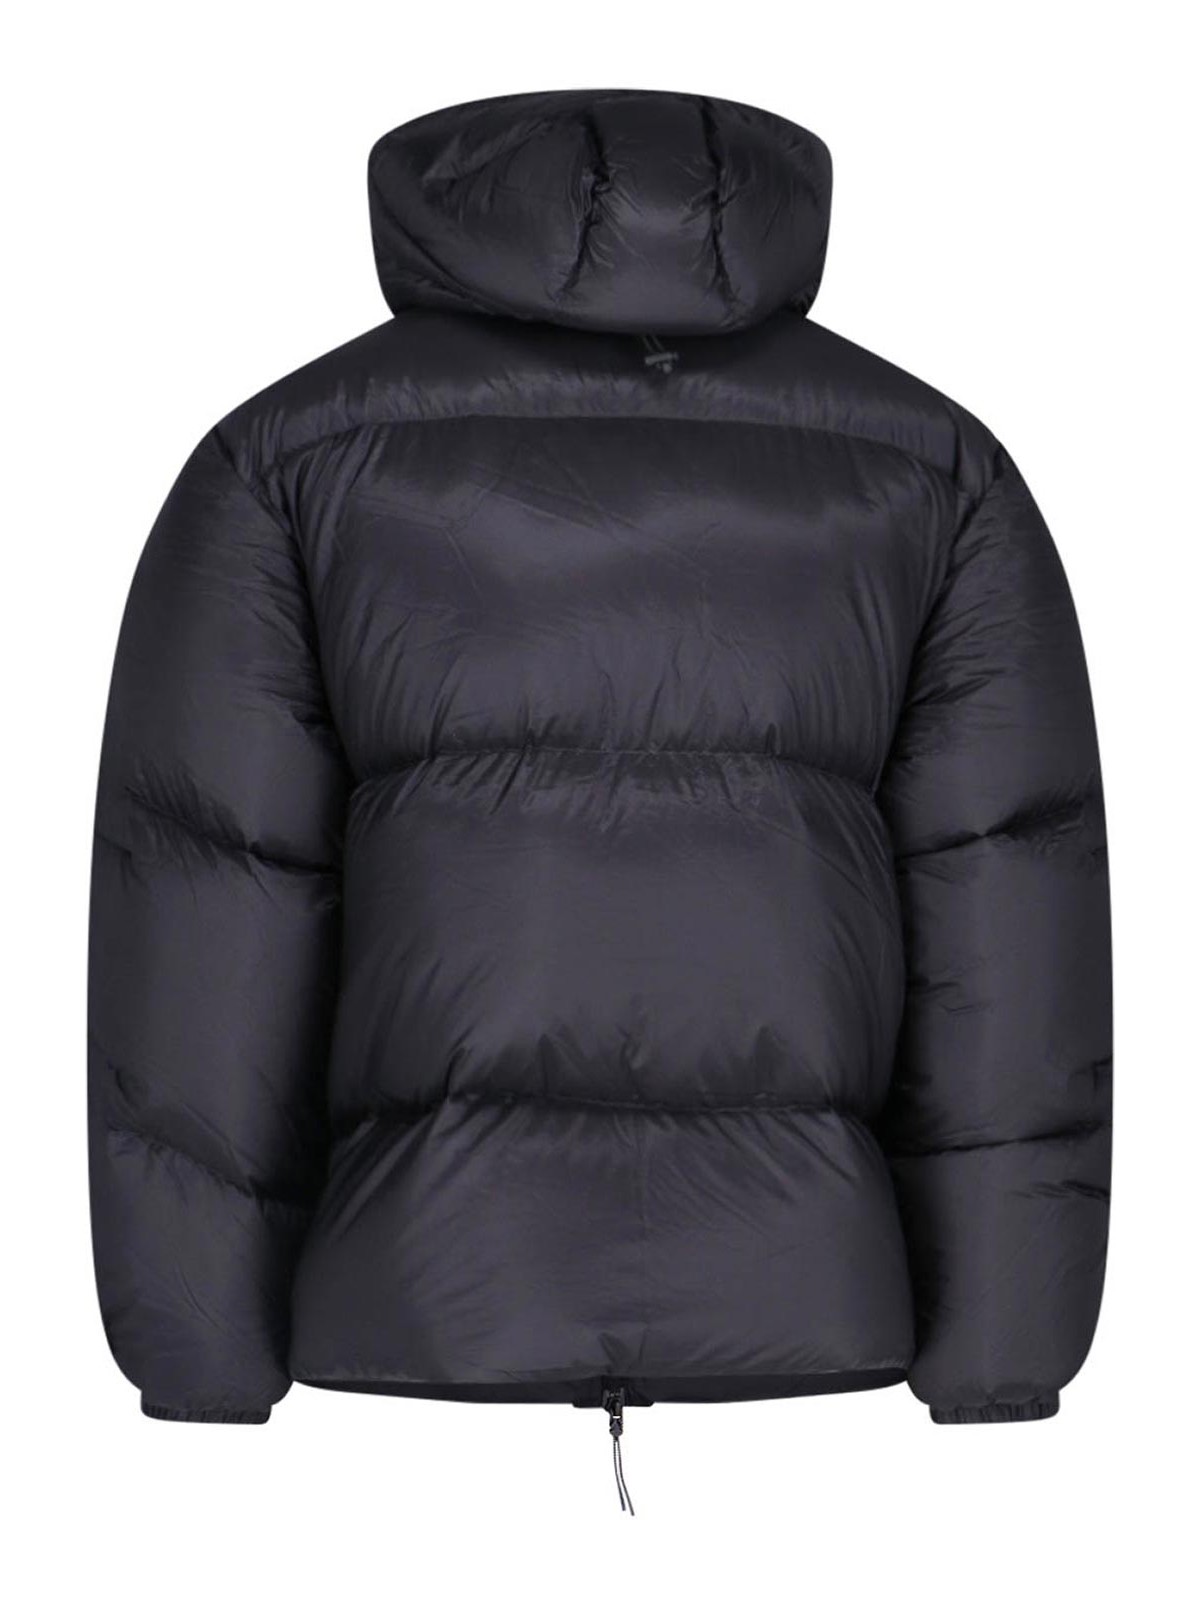 ROA Black Hooded Jacket